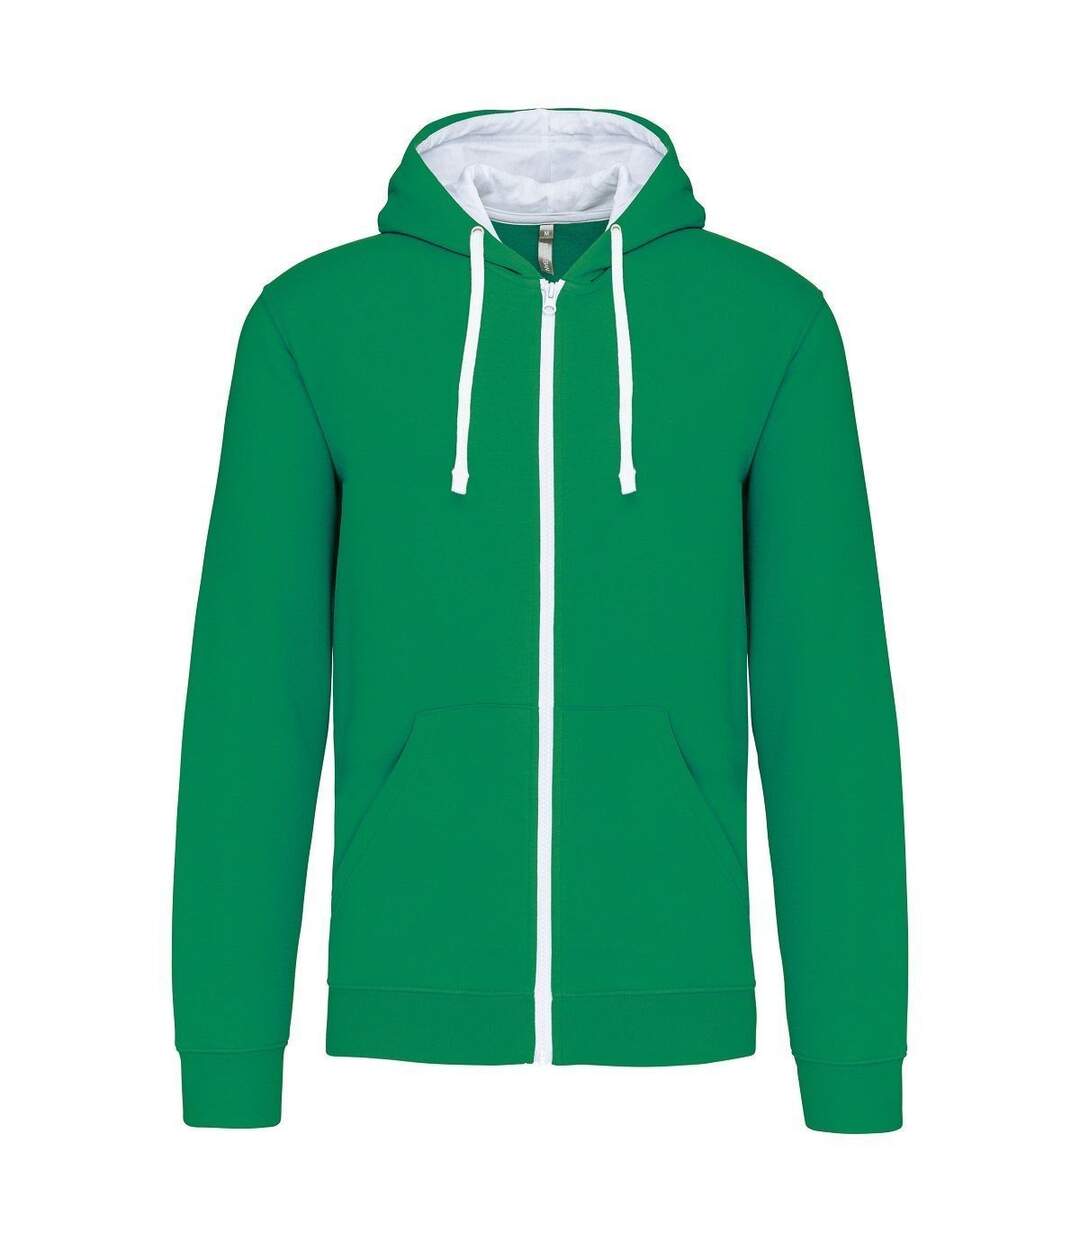 Veste à capuche contrastée - Homme - K466 - vert kelly et blanc